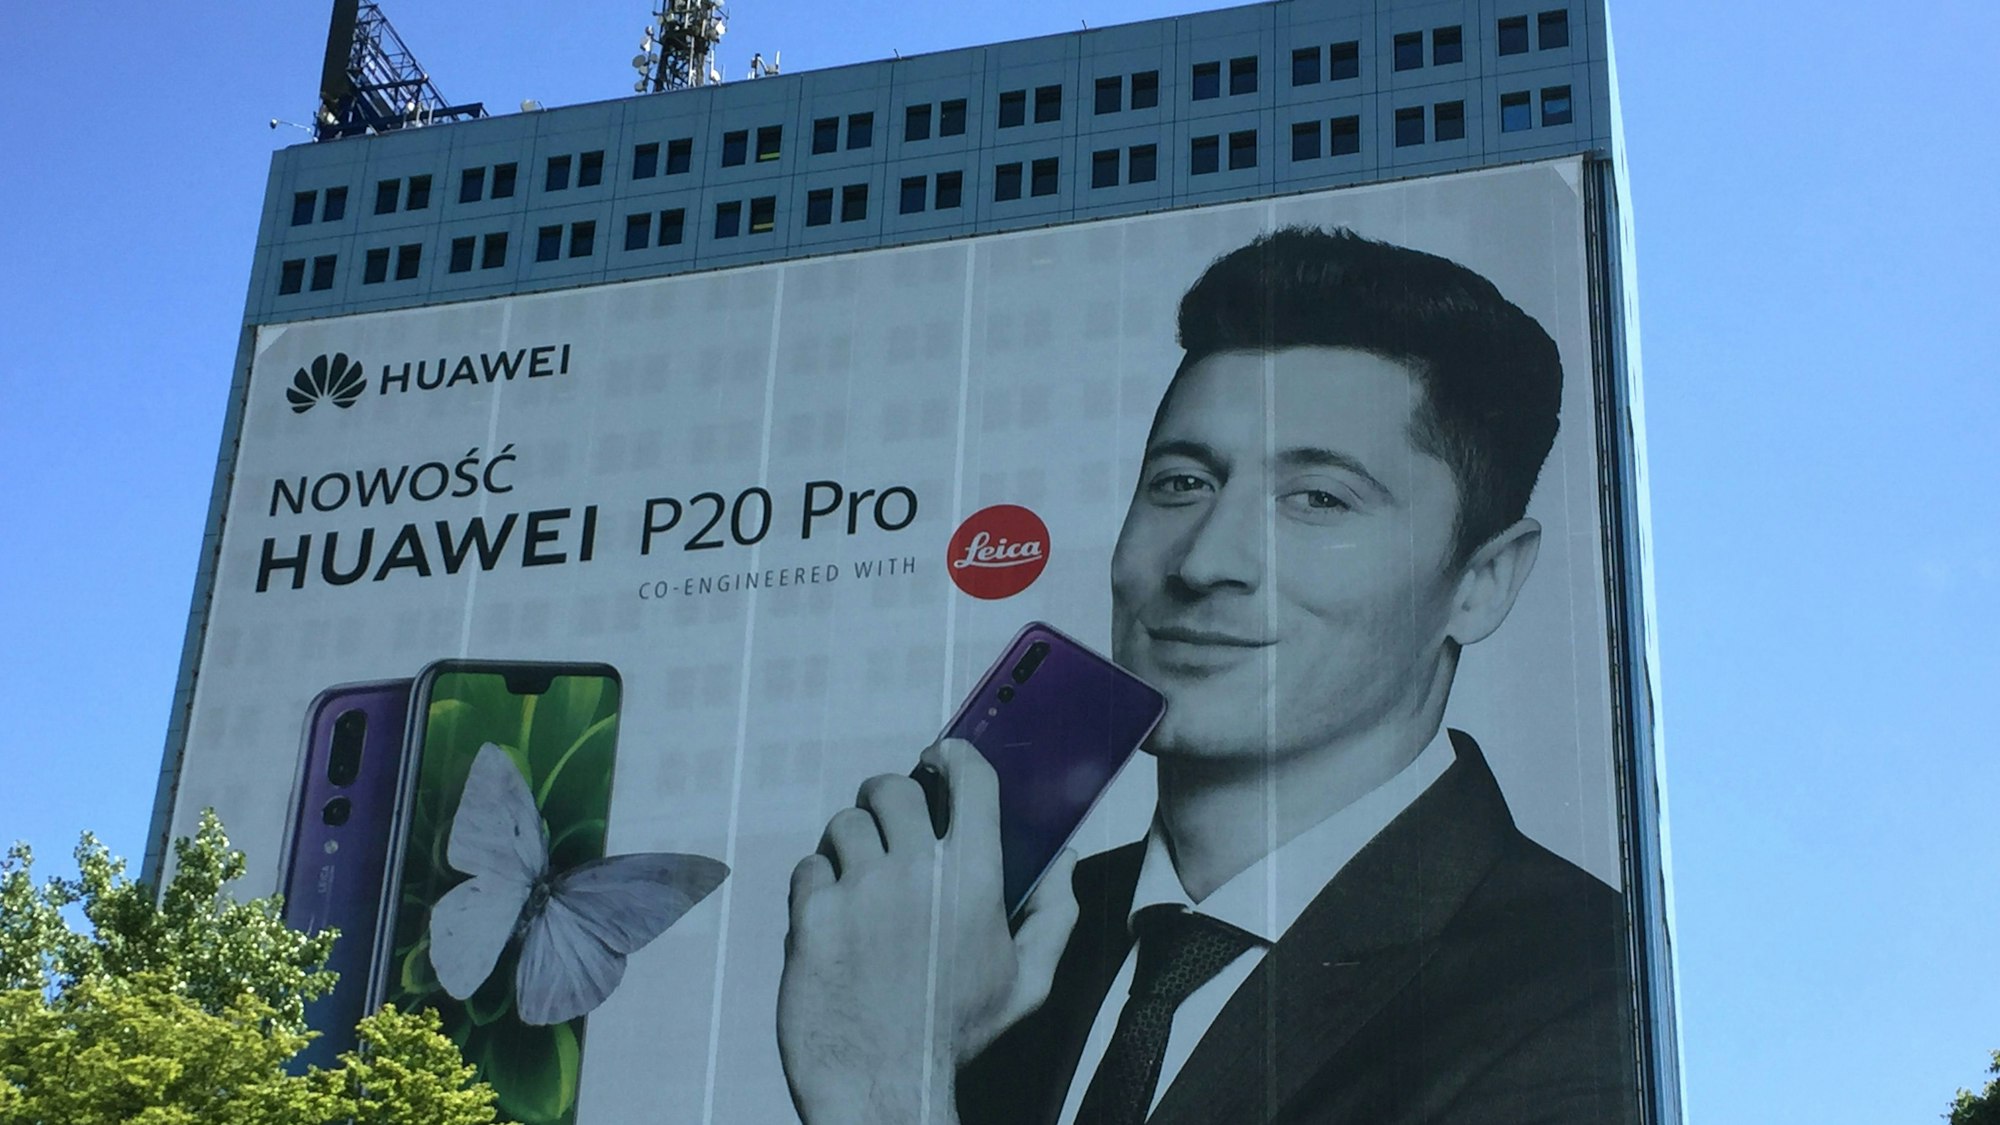 Werbeplakat von Huawei mit Robert Lewandowski.